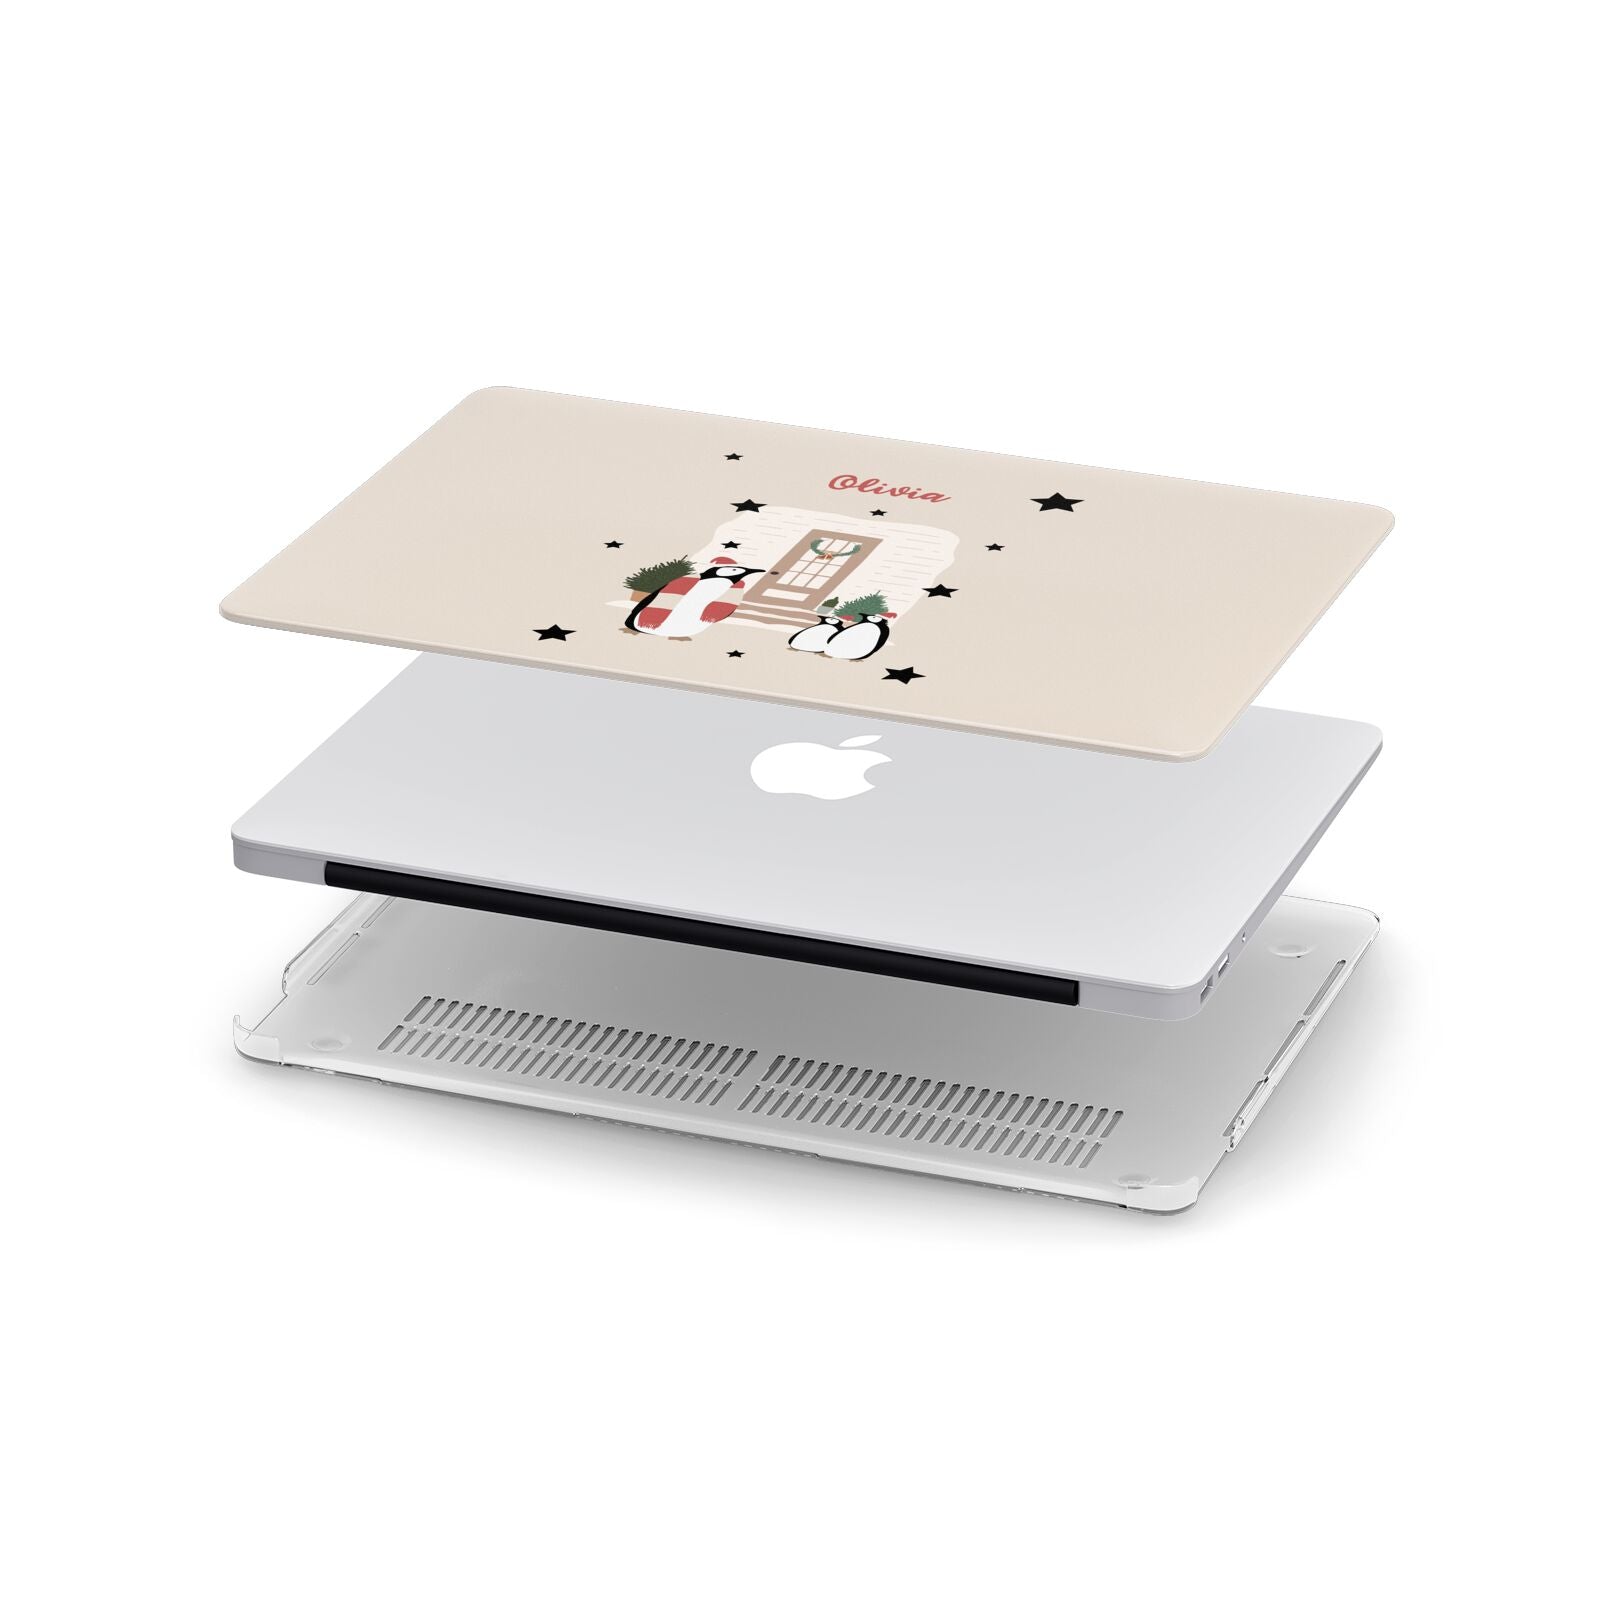 Penguin Christmas Personalised Apple MacBook Case in Detail